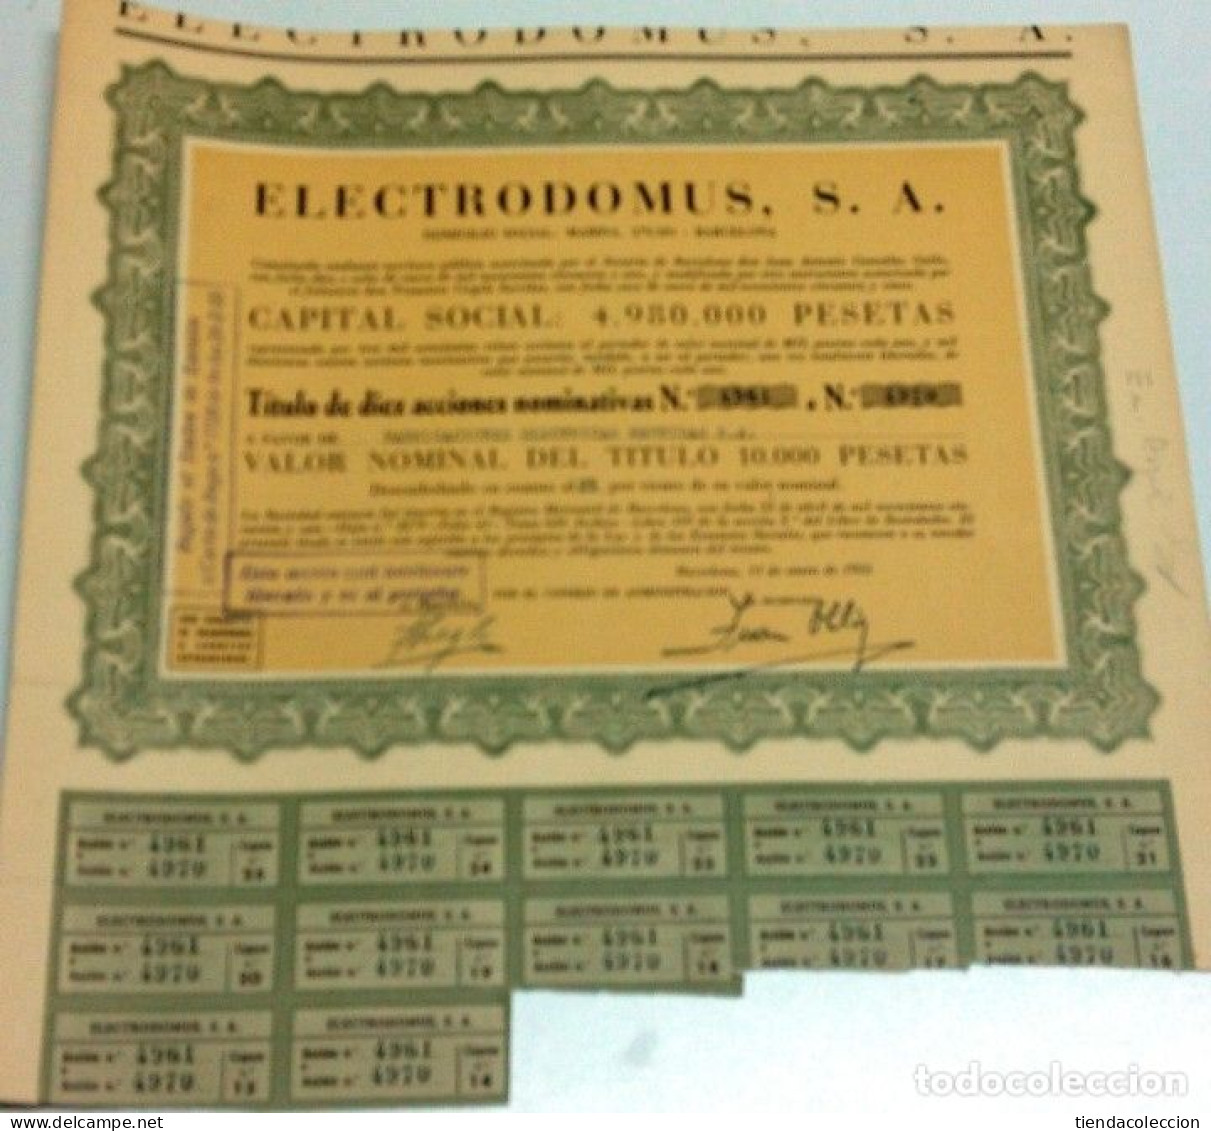 Electrodomus, S. A. - Electricidad & Gas